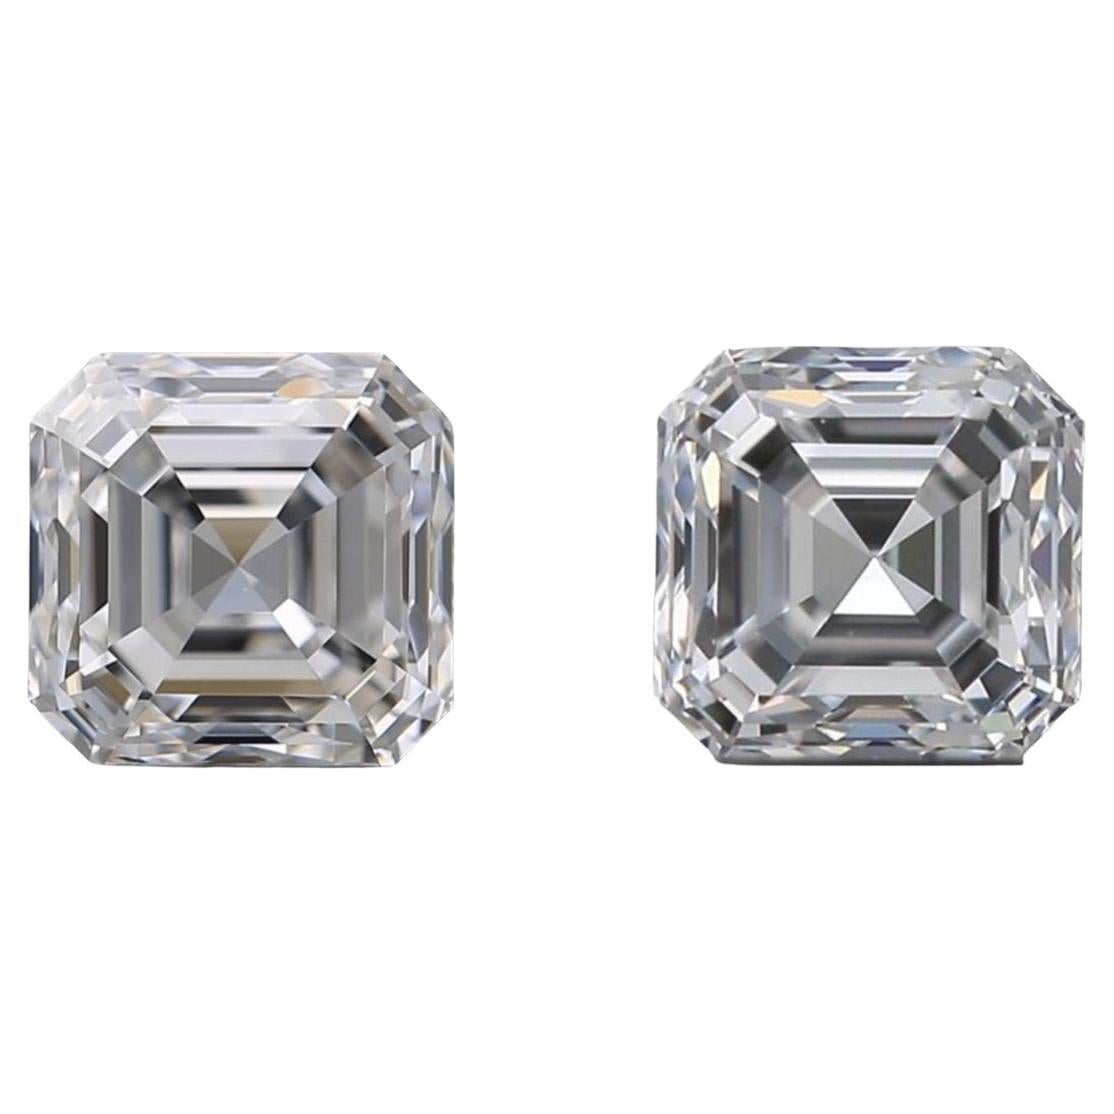 Paire de diamants en frne naturel d'un poids total de 1,85 carat avec D VVS1, certifis GIA